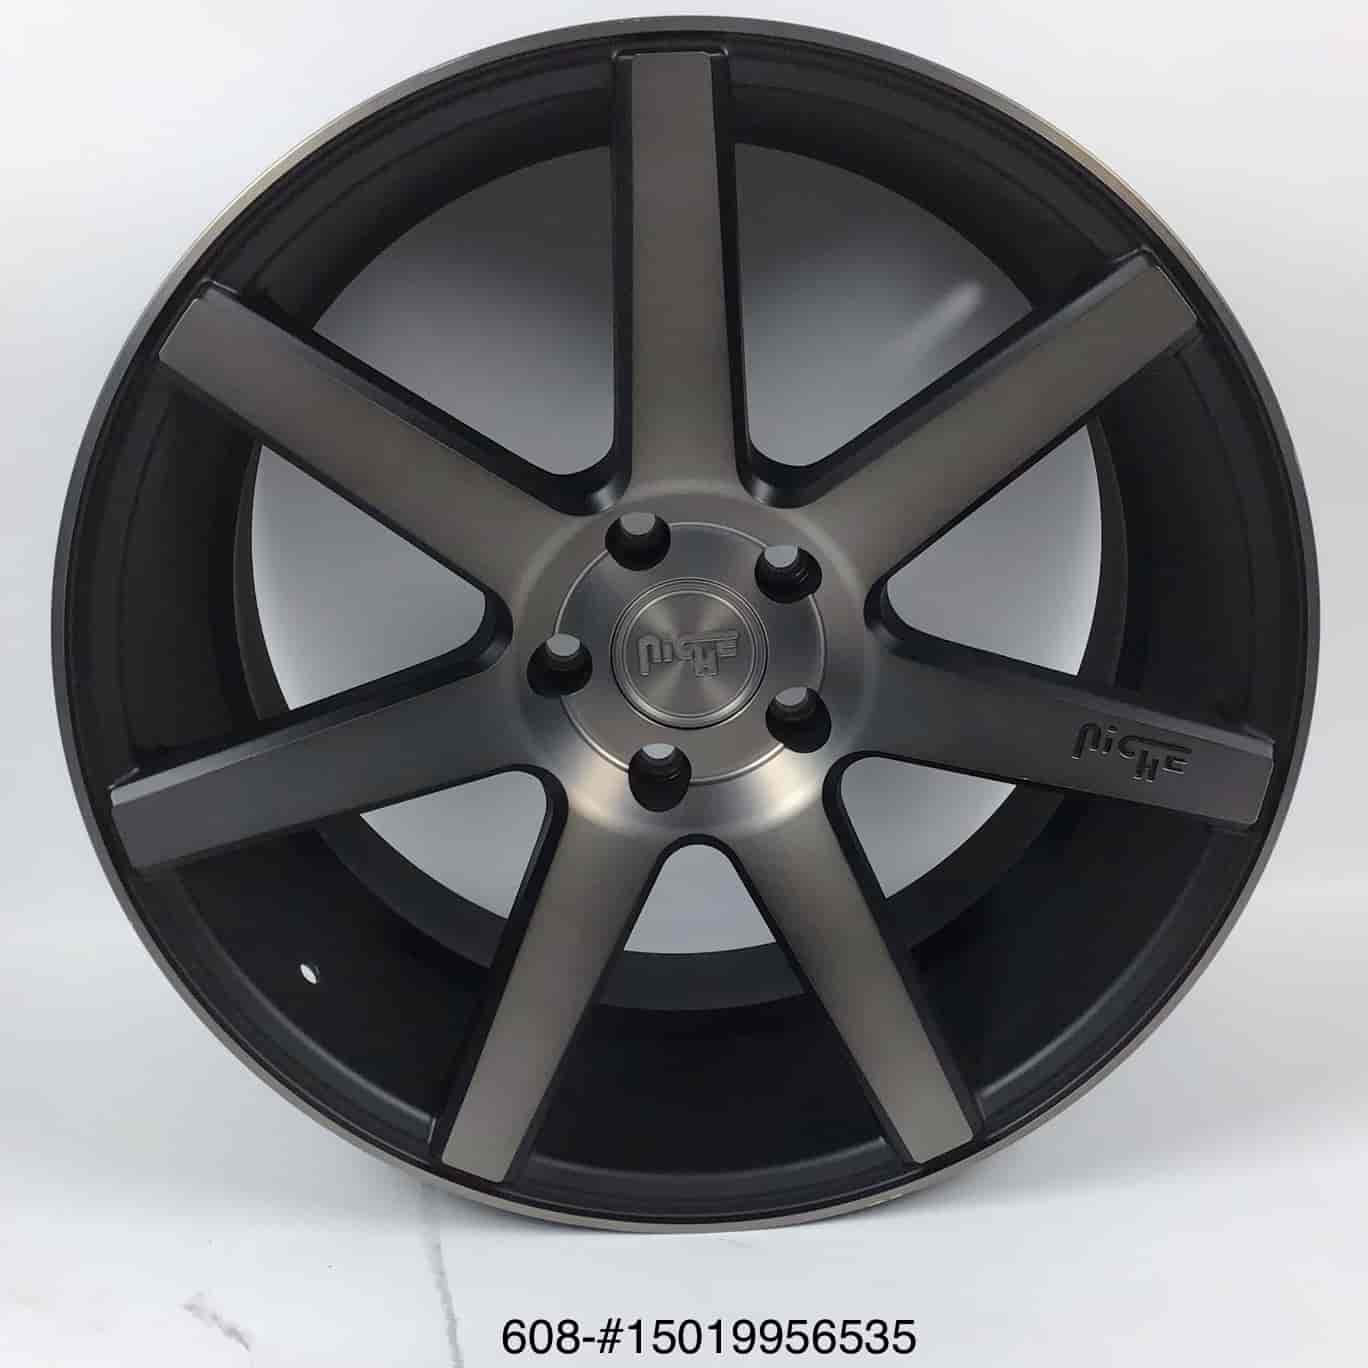 *BLEMISHED* Verona M150 Cast Concave Monoblock Wheel Size: